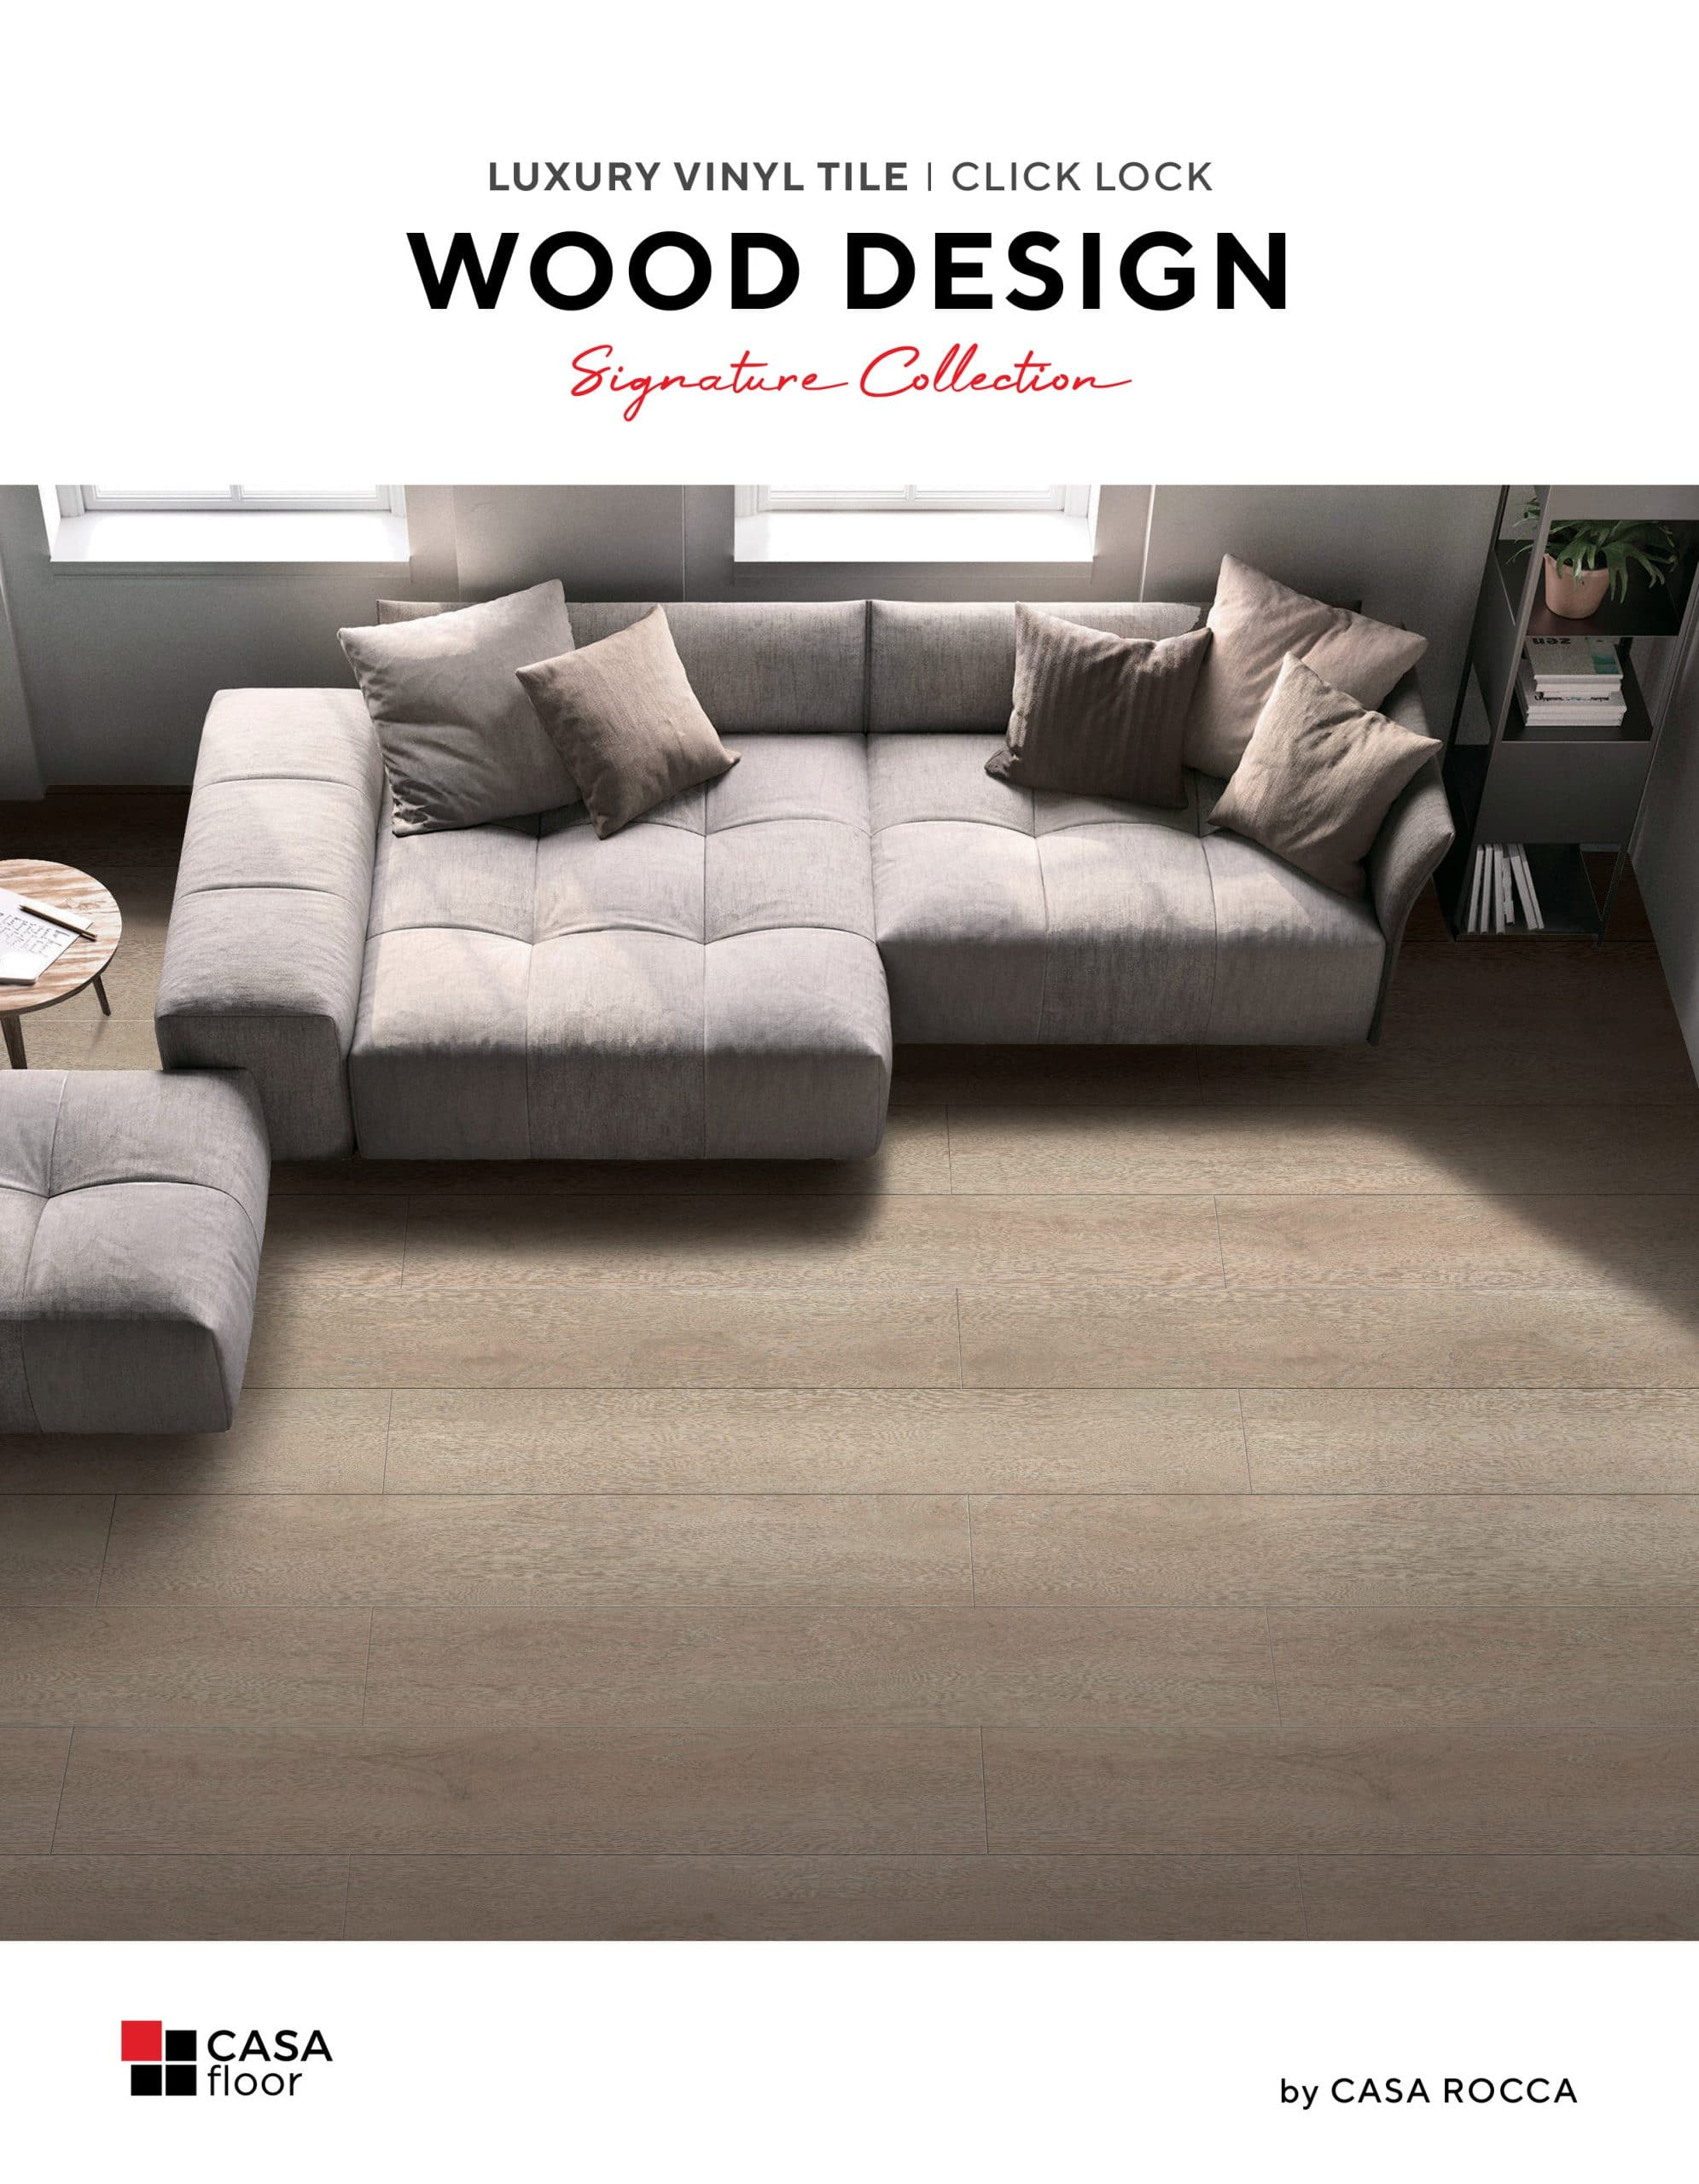 CASA Floor Wood Design Click Lock Cover